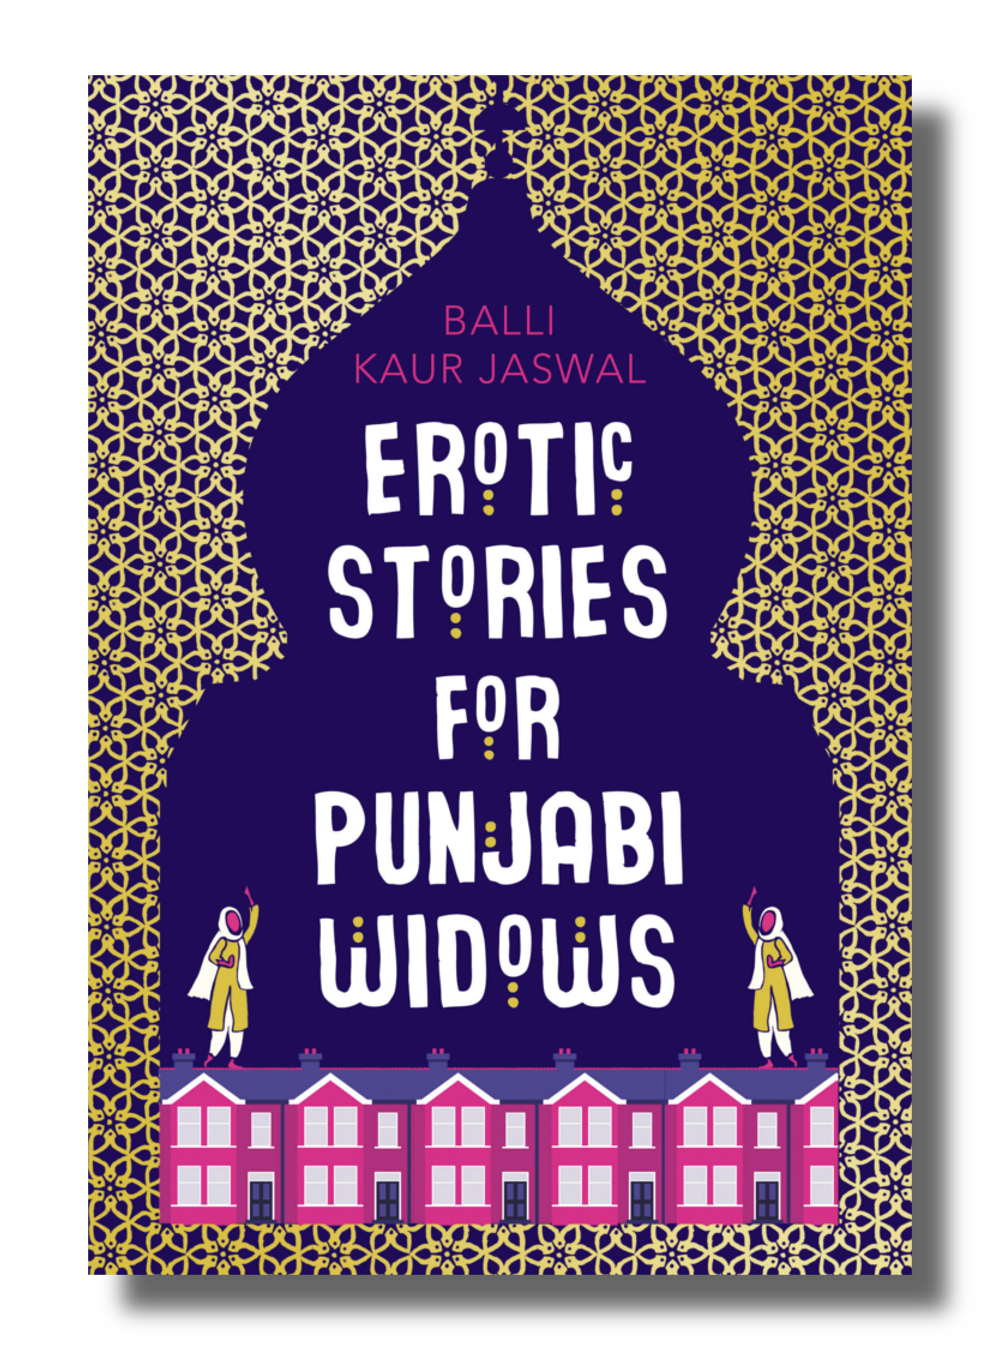 Erotic Stories of Punjabi Widows (2017) — Balli Kaur Jaswal pic